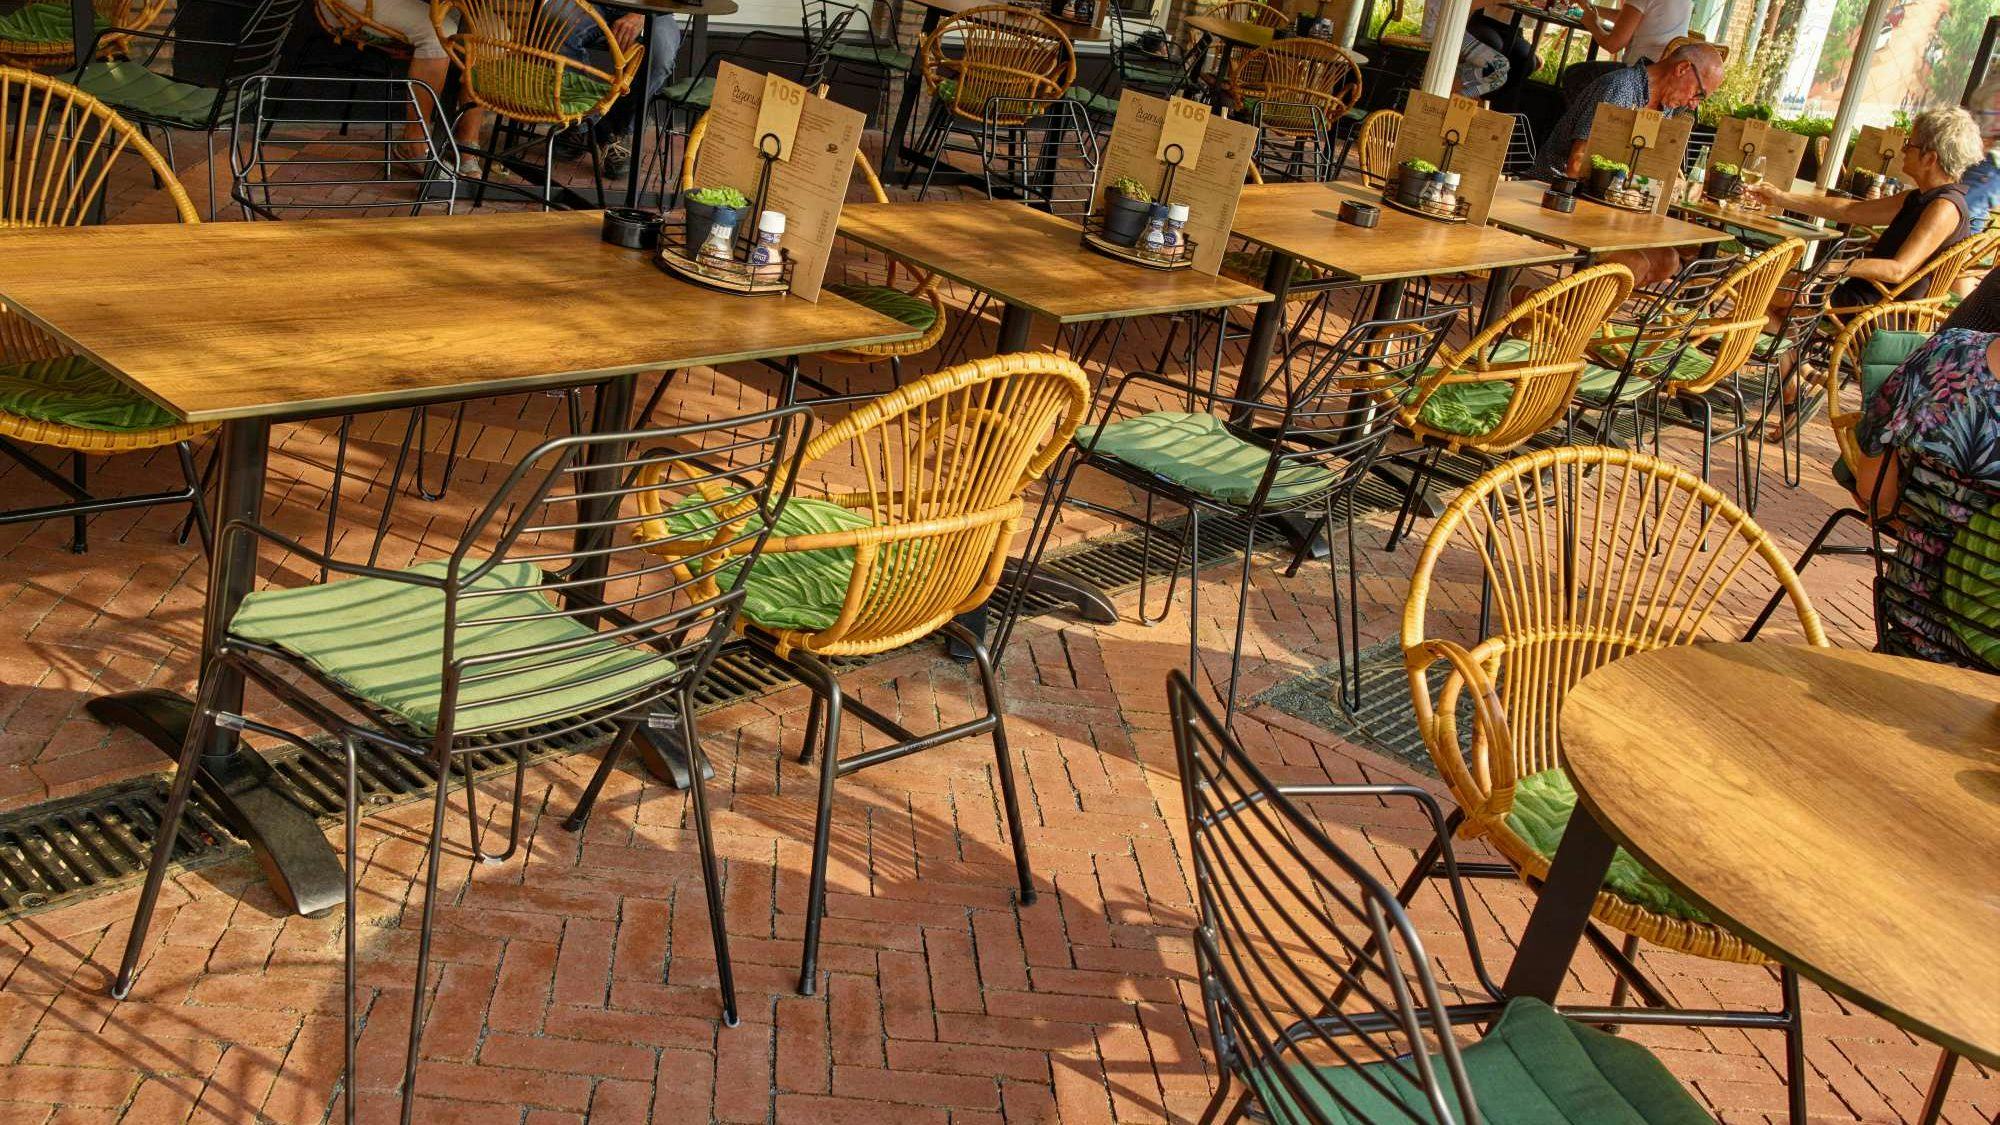 Het terras van Eigenwijs eten & drinken in Oostburg is een mix & match van modern draadstaal meubilair en weerbestendige rotanlook stoelen, geïnspireerd op de sixties. De groene zitkussens maken het warme terras af. Meubilair: Satelliet. 